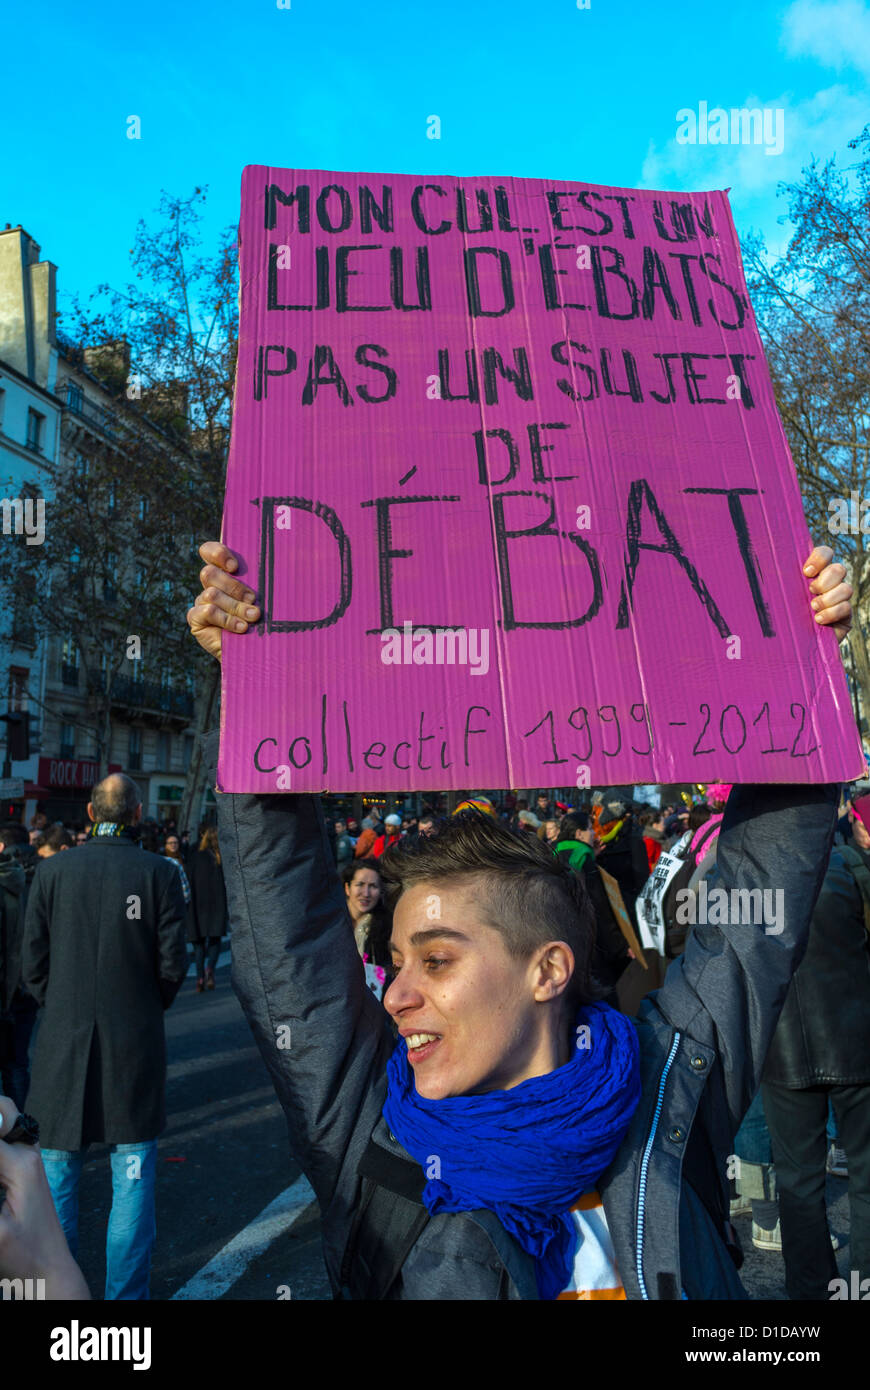 Paris, Frankreich, Frau hält Protestschild, in Gay Marriage Demonstration, 'Pink Block' LGBT Aktivismus , 'Mein Arsch ist ein Ort für Auswürfe, kein Ort für Debatten' (Collectif 1999-2012) Kundgebung, Ehebungsbewegung, lgbtq Demonstranten mit Plakat Stockfoto